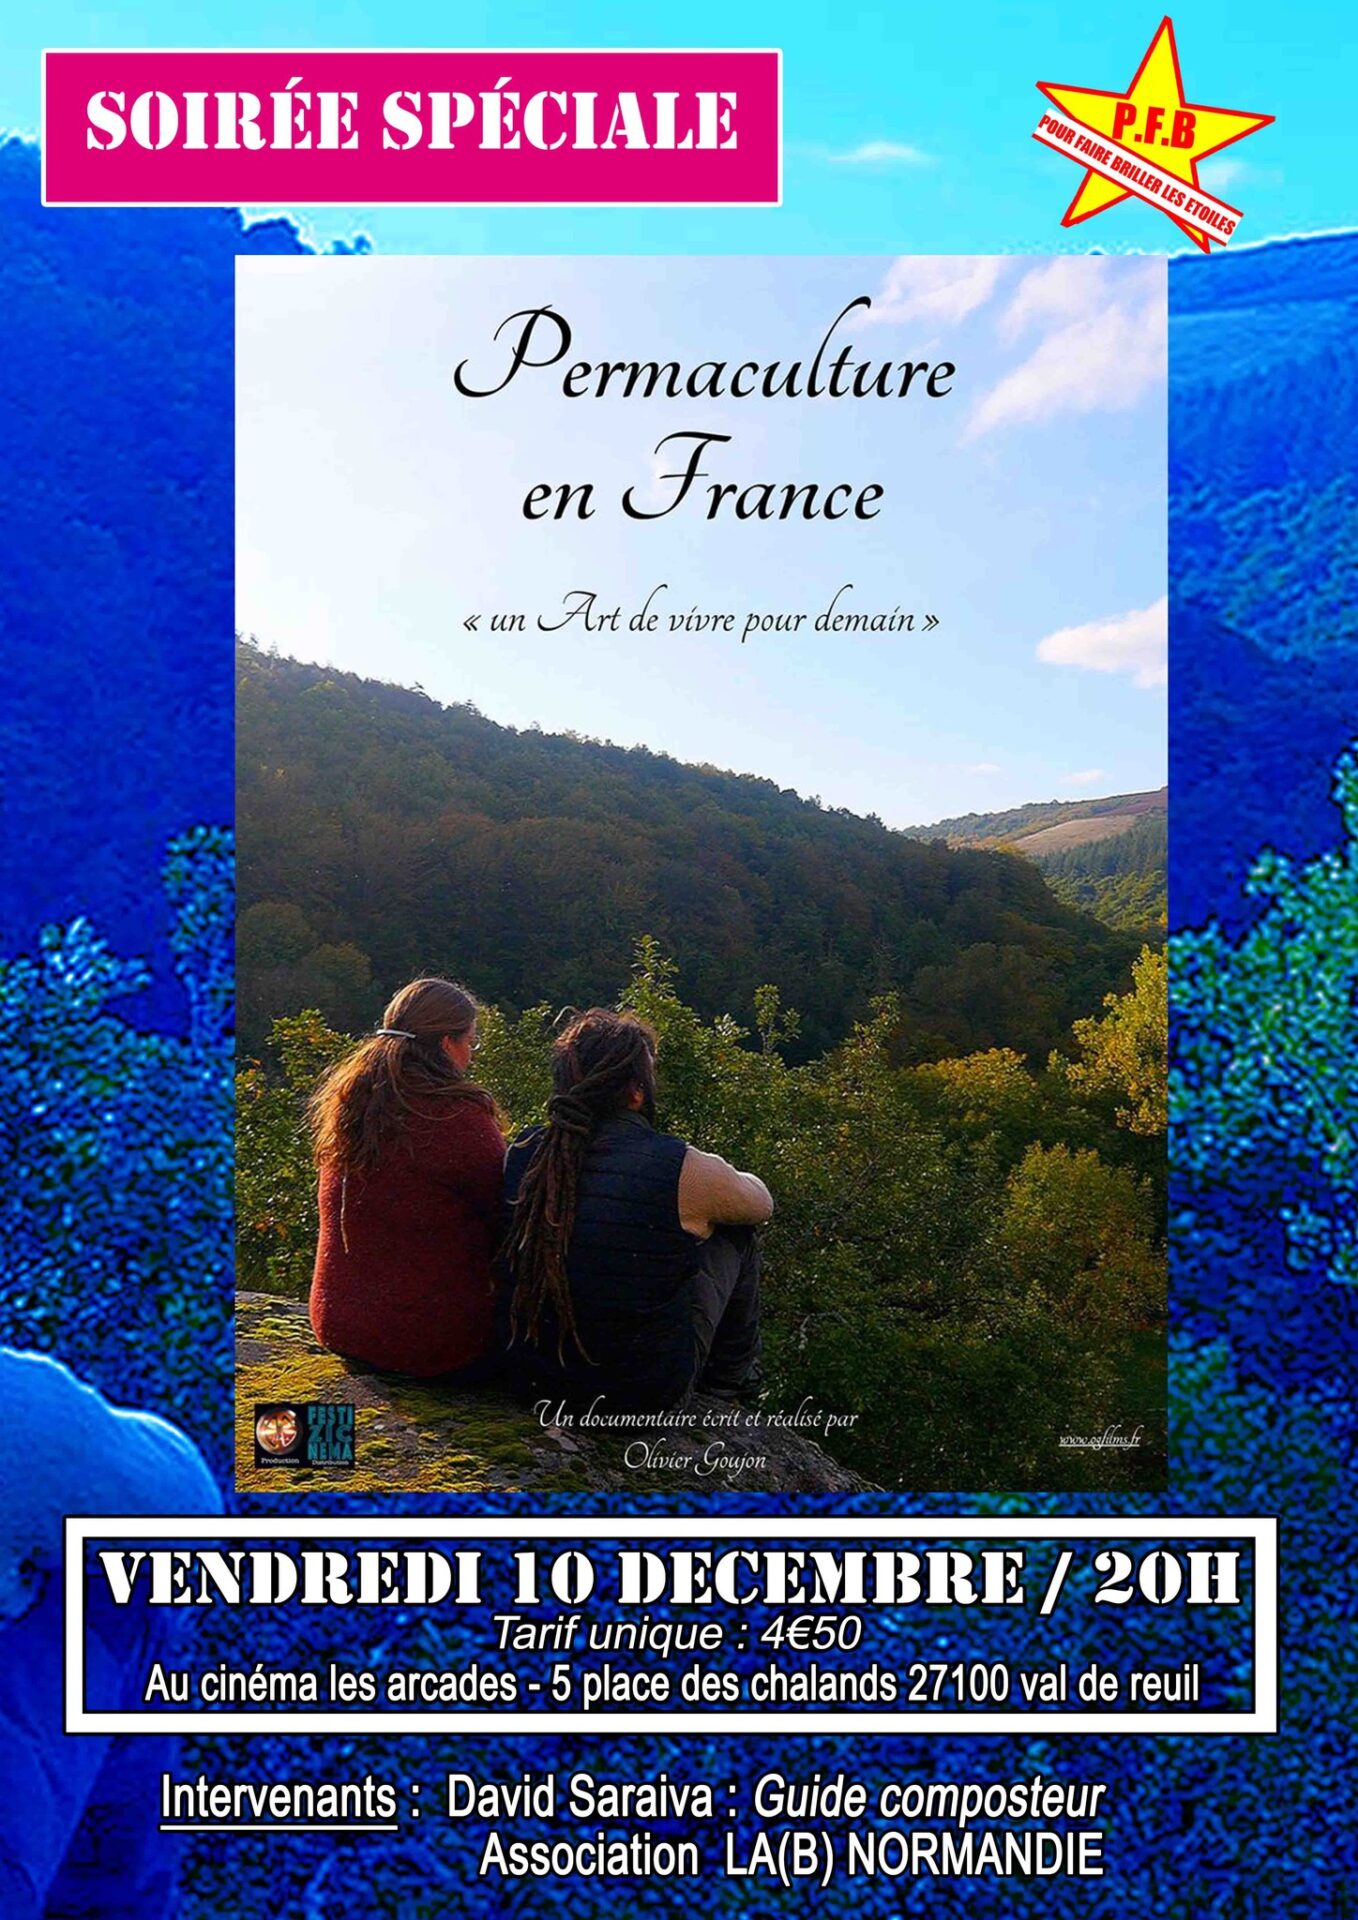 Cinéma Les Arcades : Soirée spéciale autour du film “Permaculture en France, un art de vivre pour demain”, d’Olivier Goujon